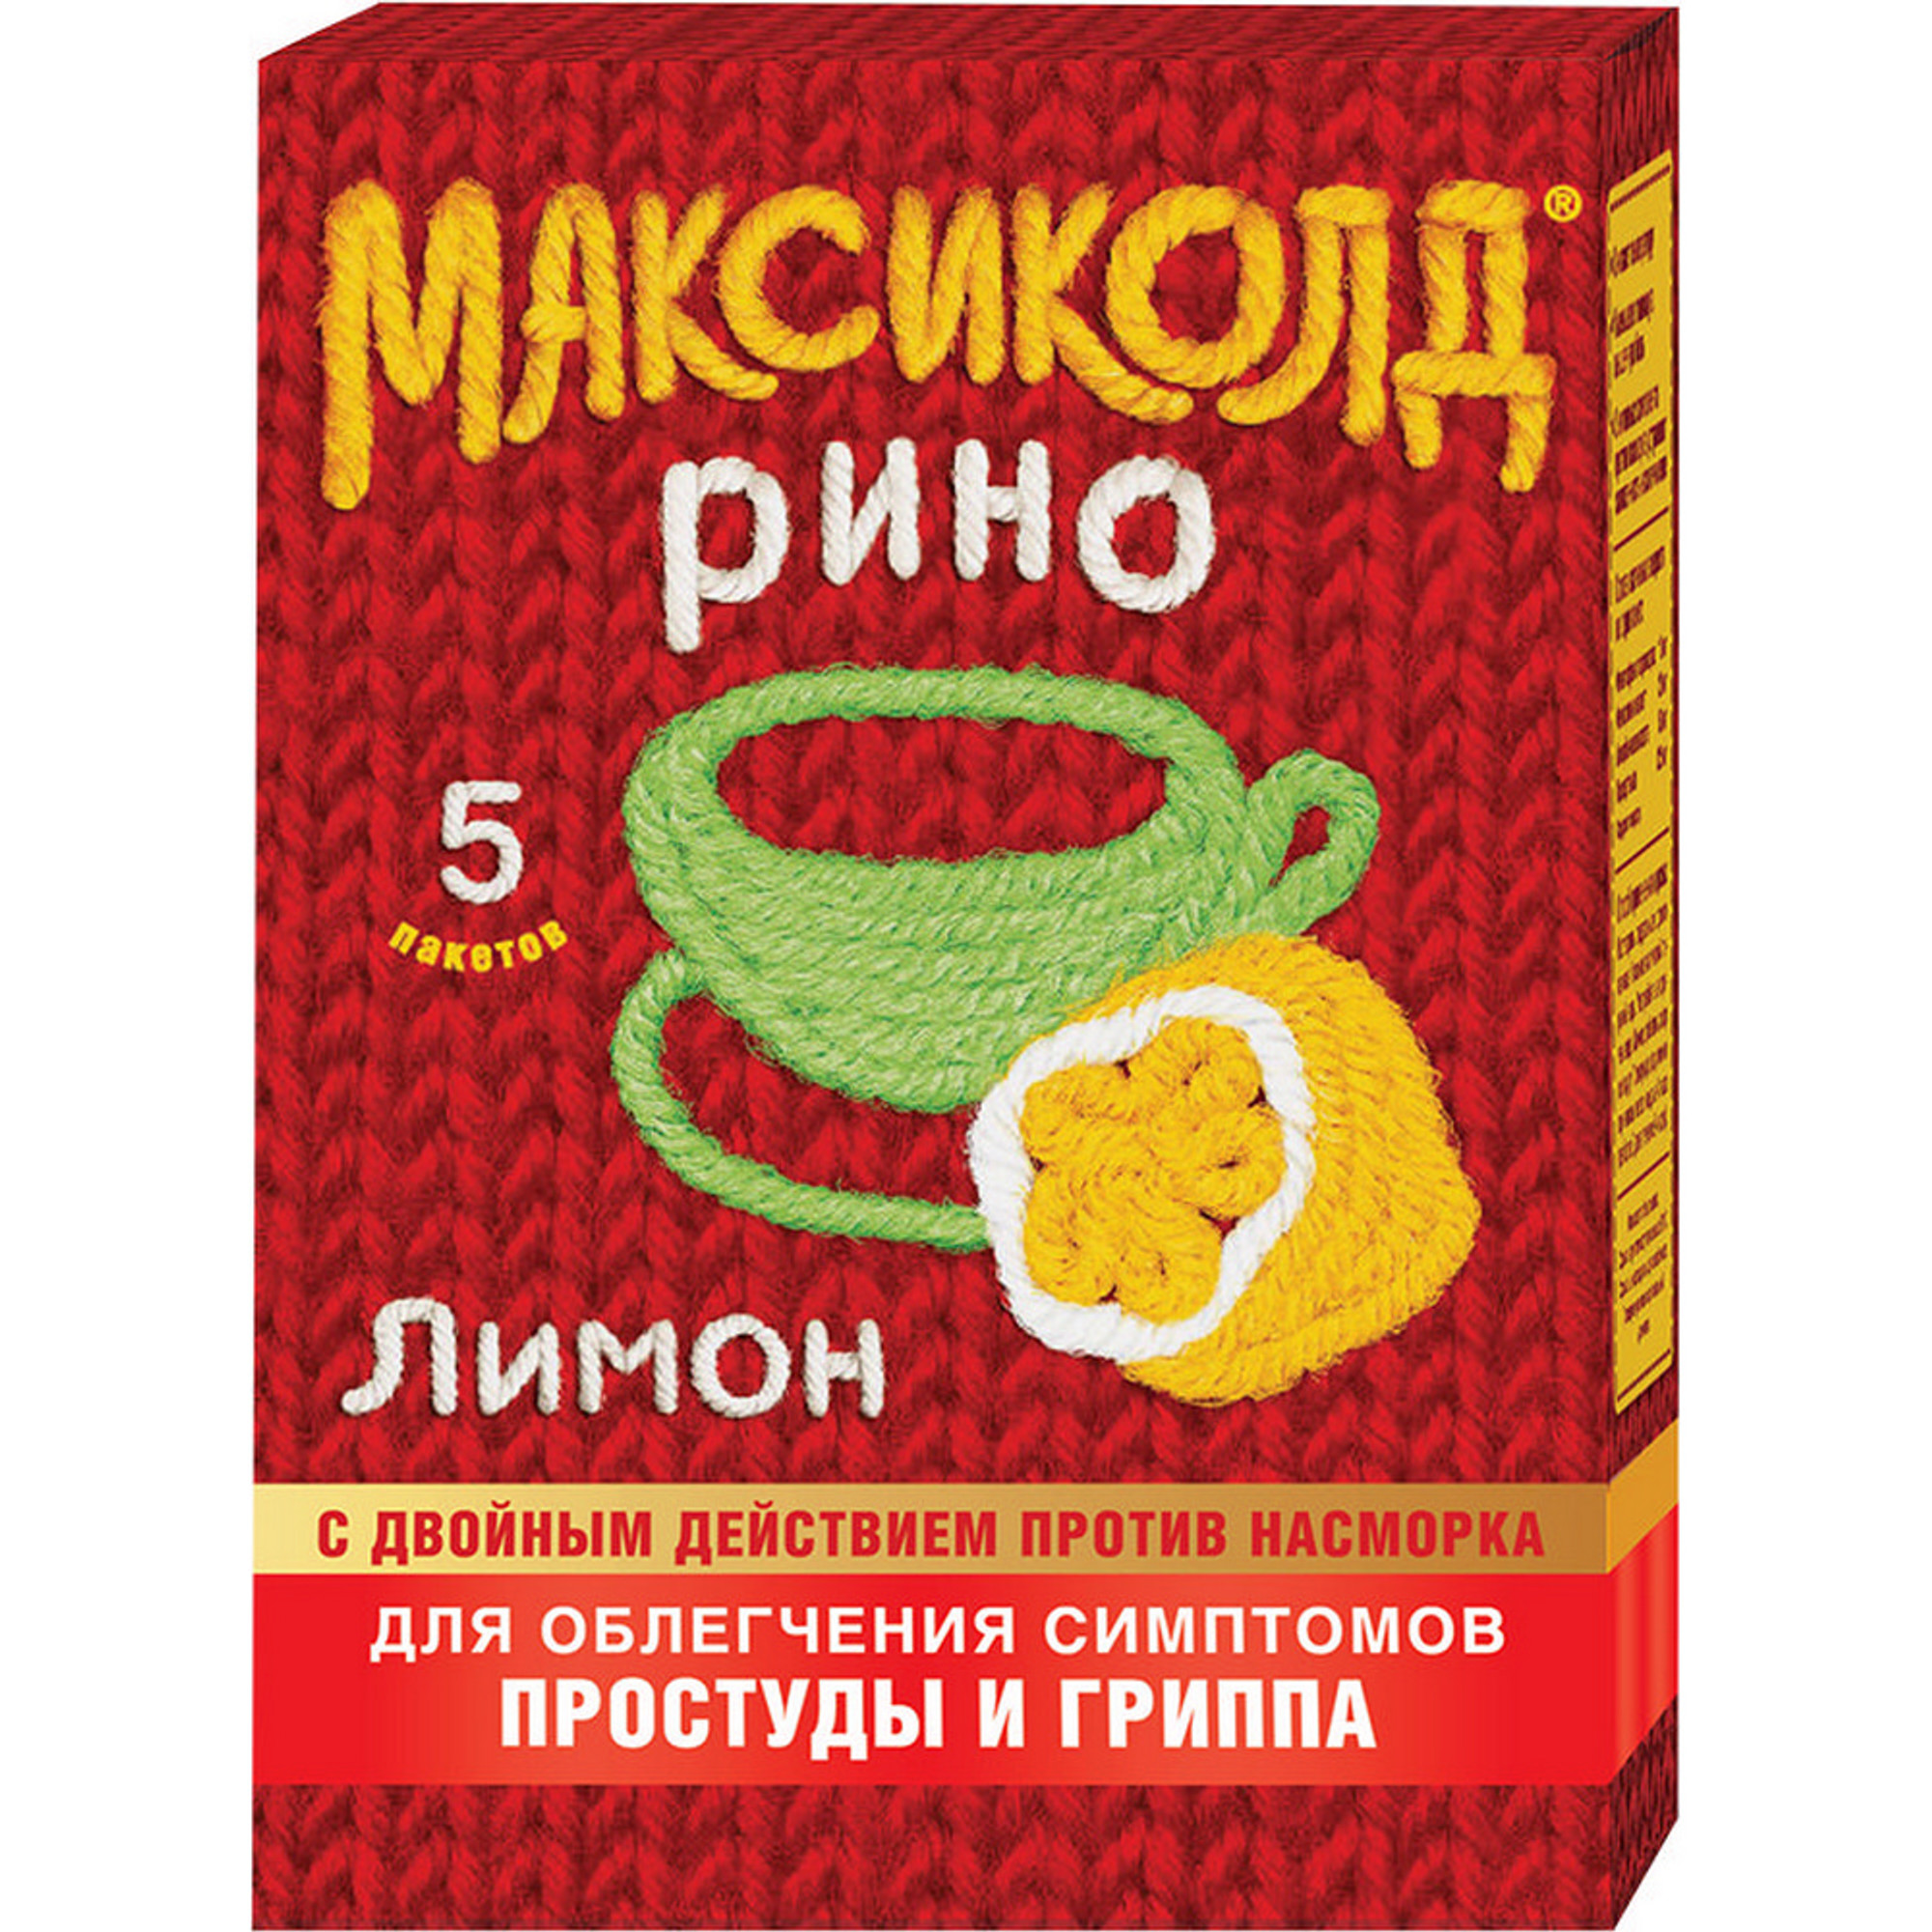 Максиколд рино, порошок для приготовления раствора (лимон) 15 г, 5 шт. антигриппин порошок для приготовления р ра лимон 500 мг 10 мг 200 мг 10 шт